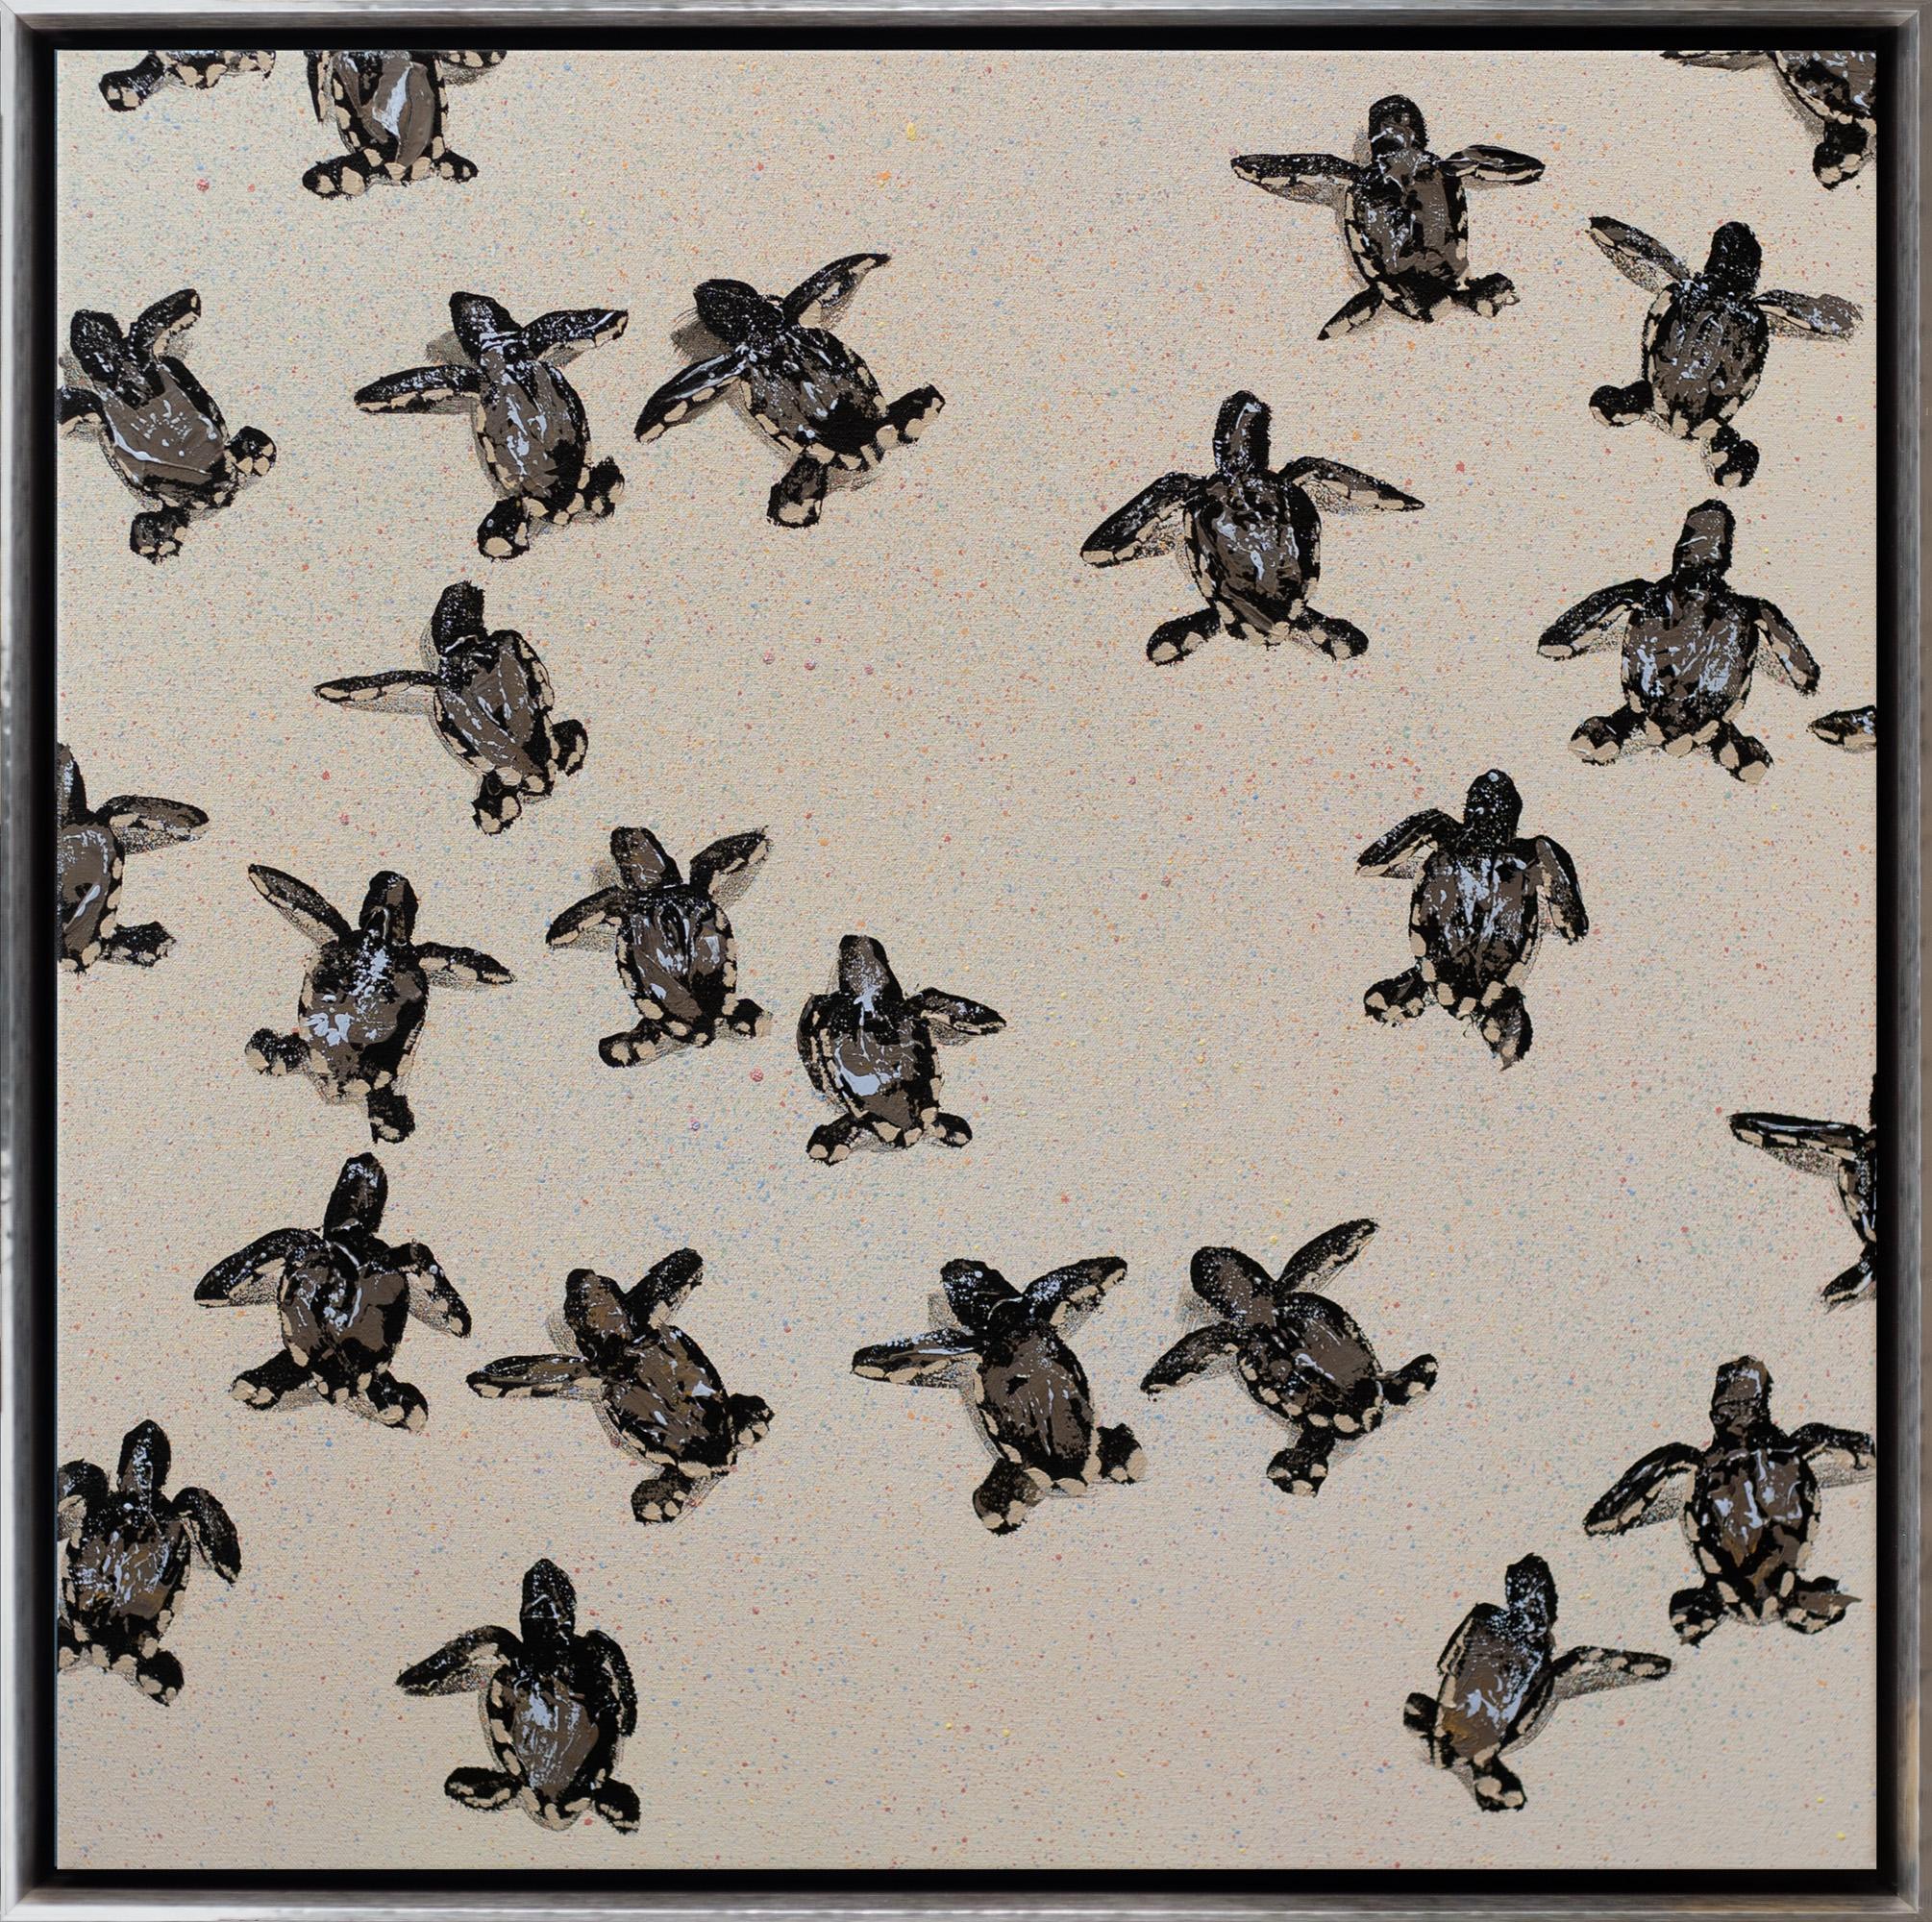 Joshua Brown Animal Painting – "Meeresschildkröten 3" Zeitgenössische Tiere Öl und Acryl auf Leinwand Gerahmte Malerei